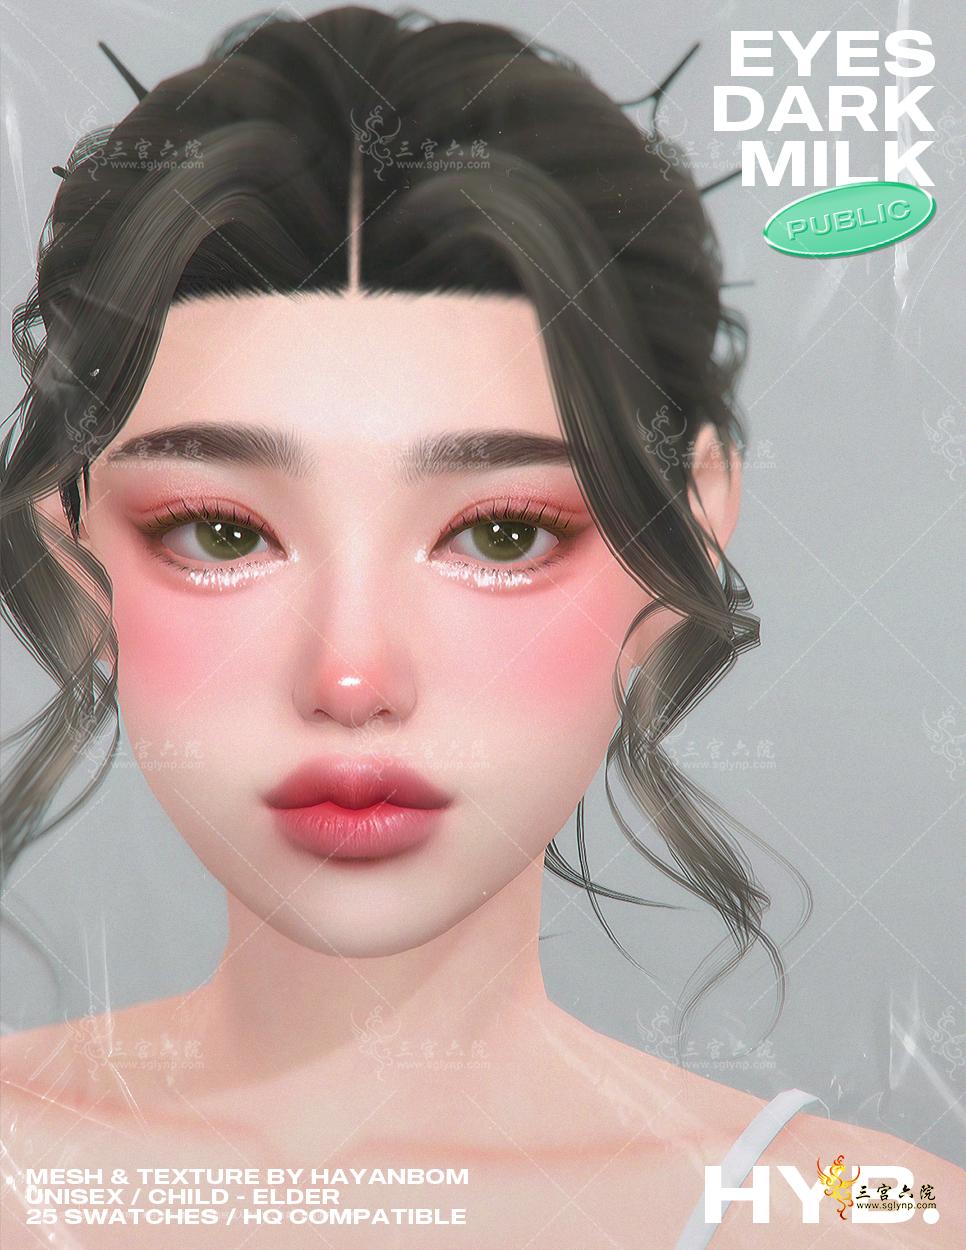 hyb_eyes_dark milk2.png